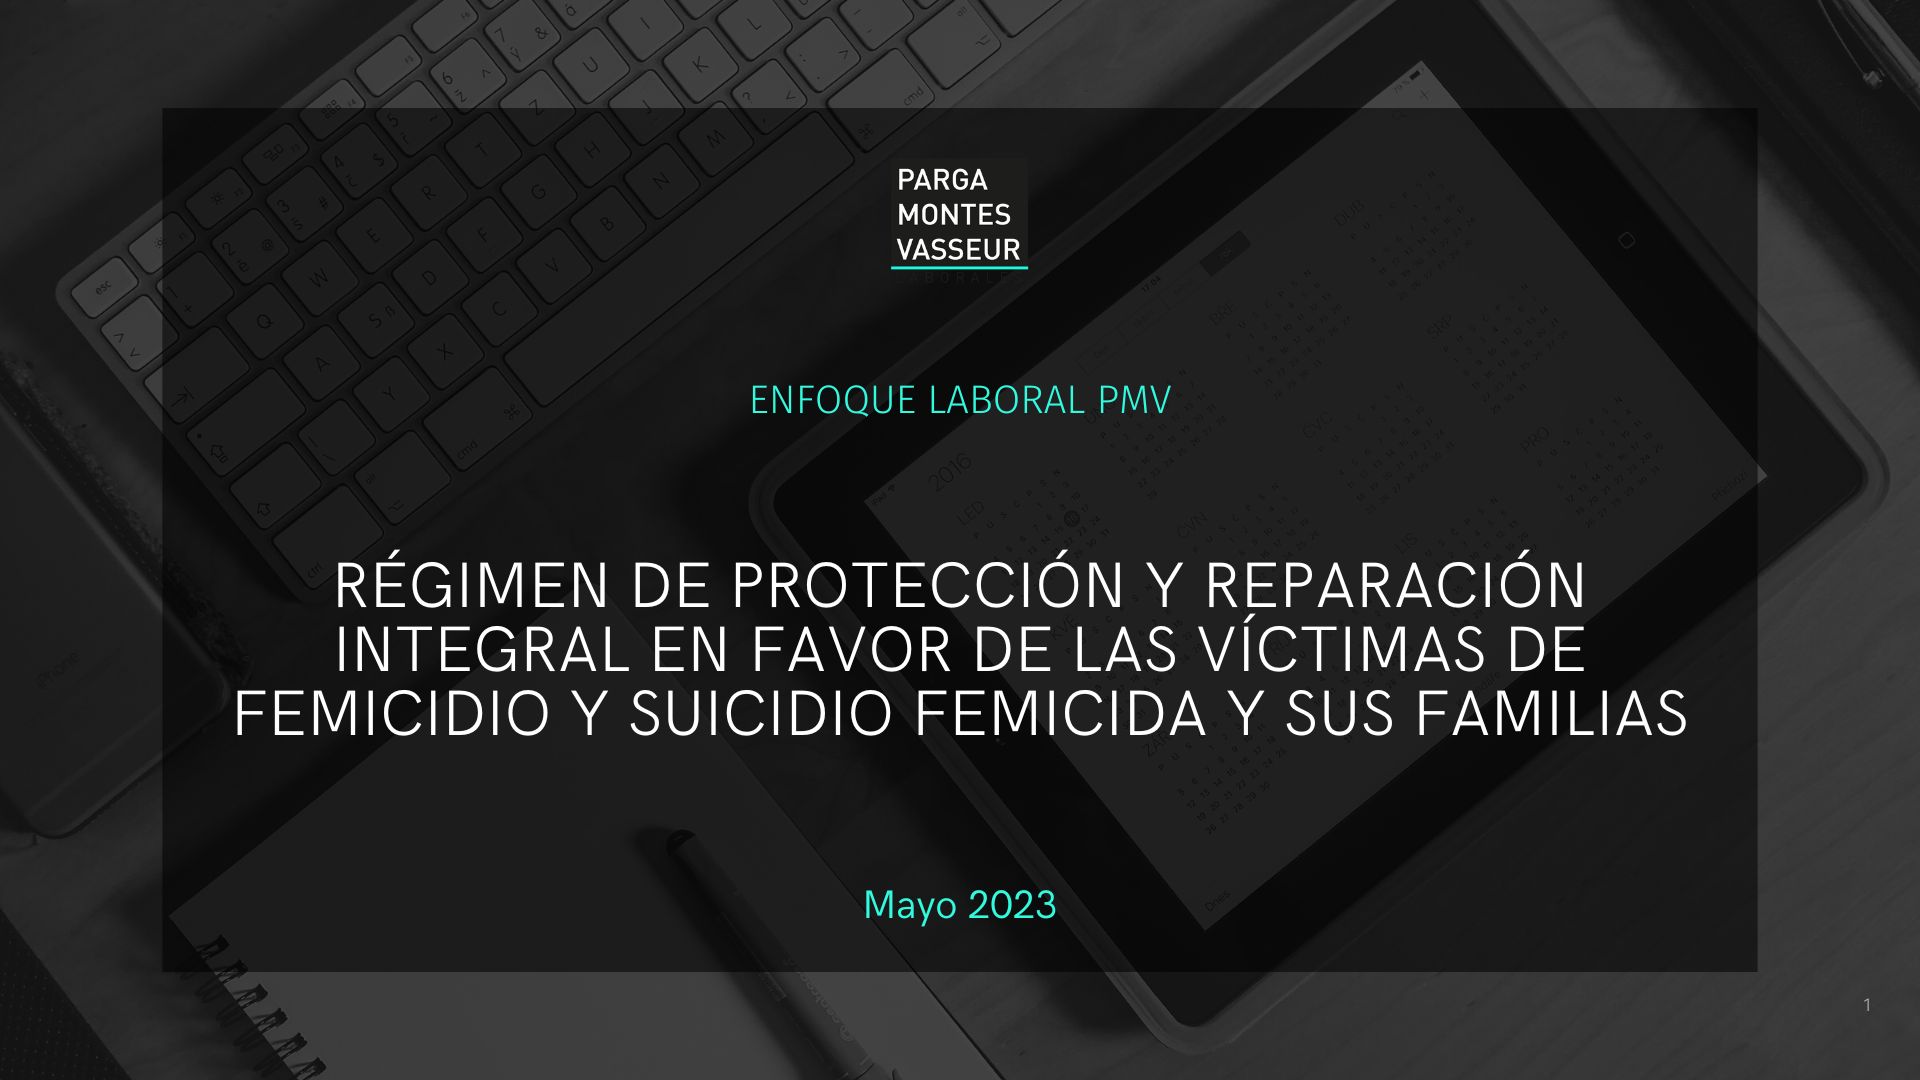 Régimen de protección y reparación integral en favor de las víctimas de femicidio y suicidio feminista y sus familias